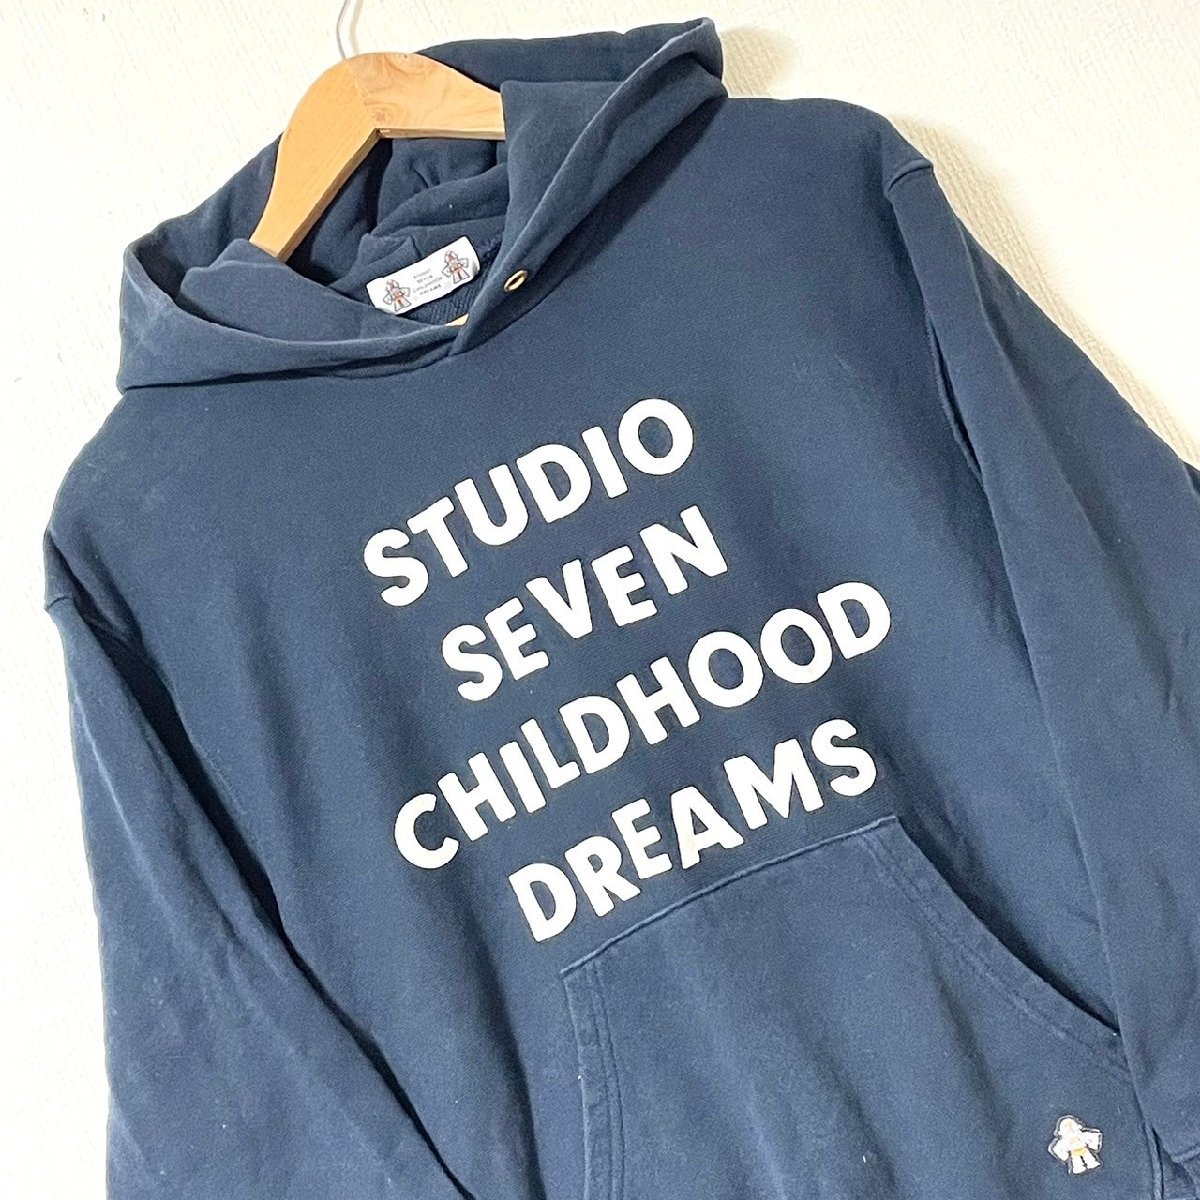 (^w^)b GU ジーユー STUDIO SEVEN CHILDHOOD DREAMS スタジオセブン スウェット パーカー ネイビー 紺 メンズ M フード フーディー 7736Aの画像5